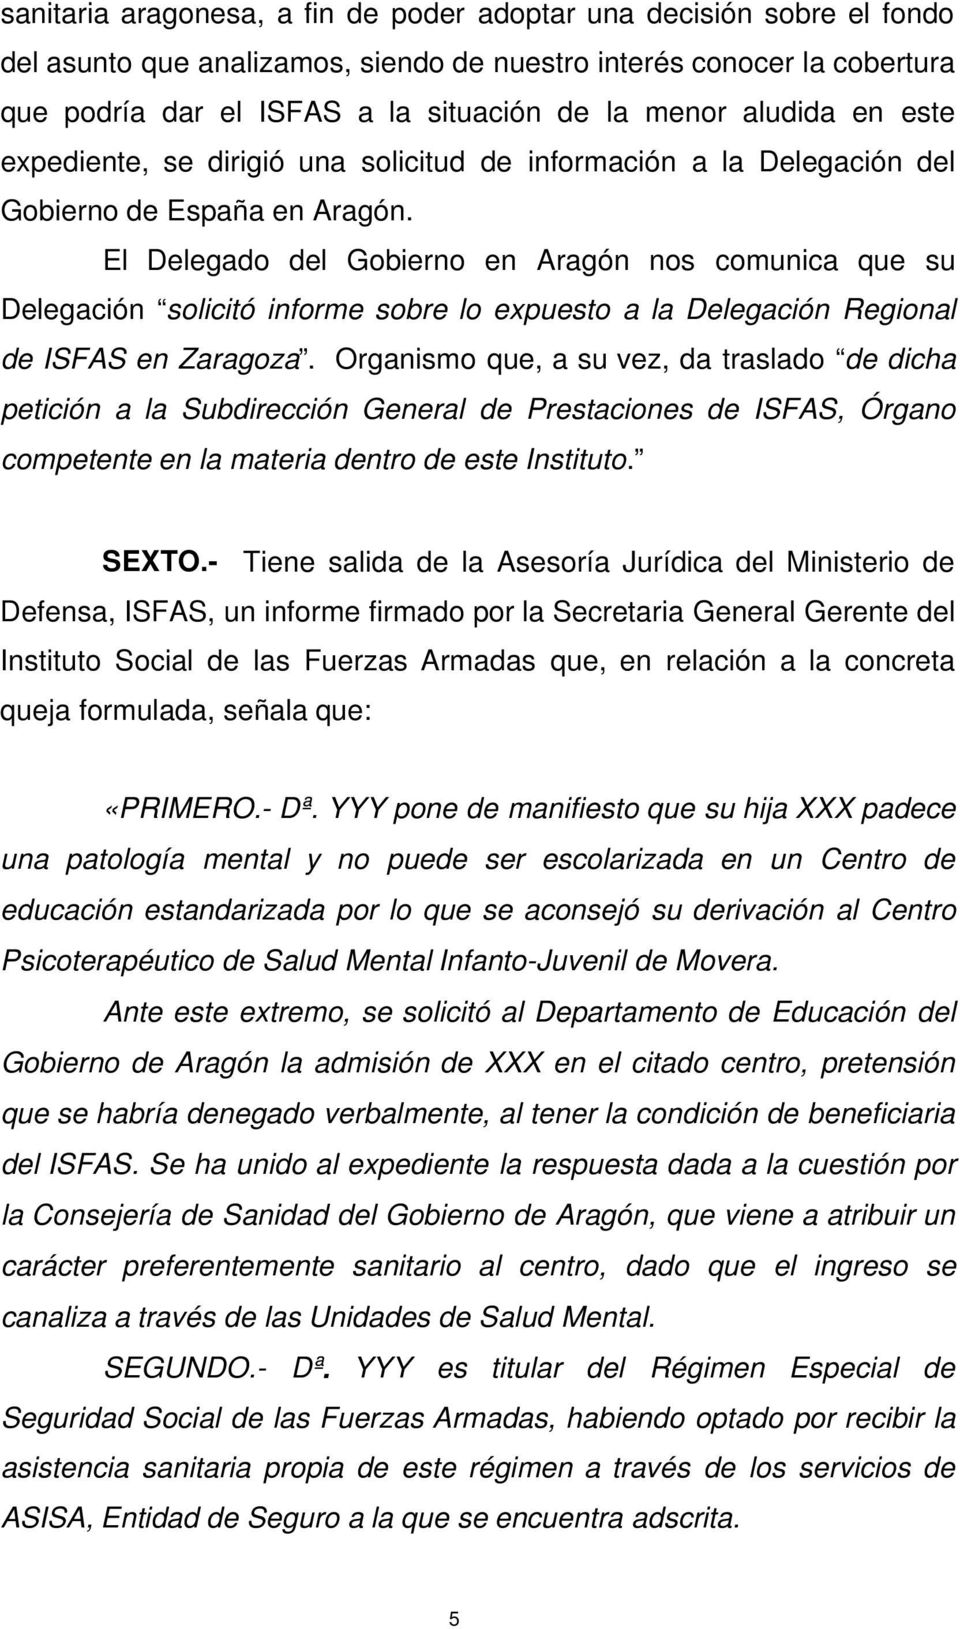 El Delegado del Gobierno en Aragón nos comunica que su Delegación solicitó informe sobre lo expuesto a la Delegación Regional de ISFAS en Zaragoza.